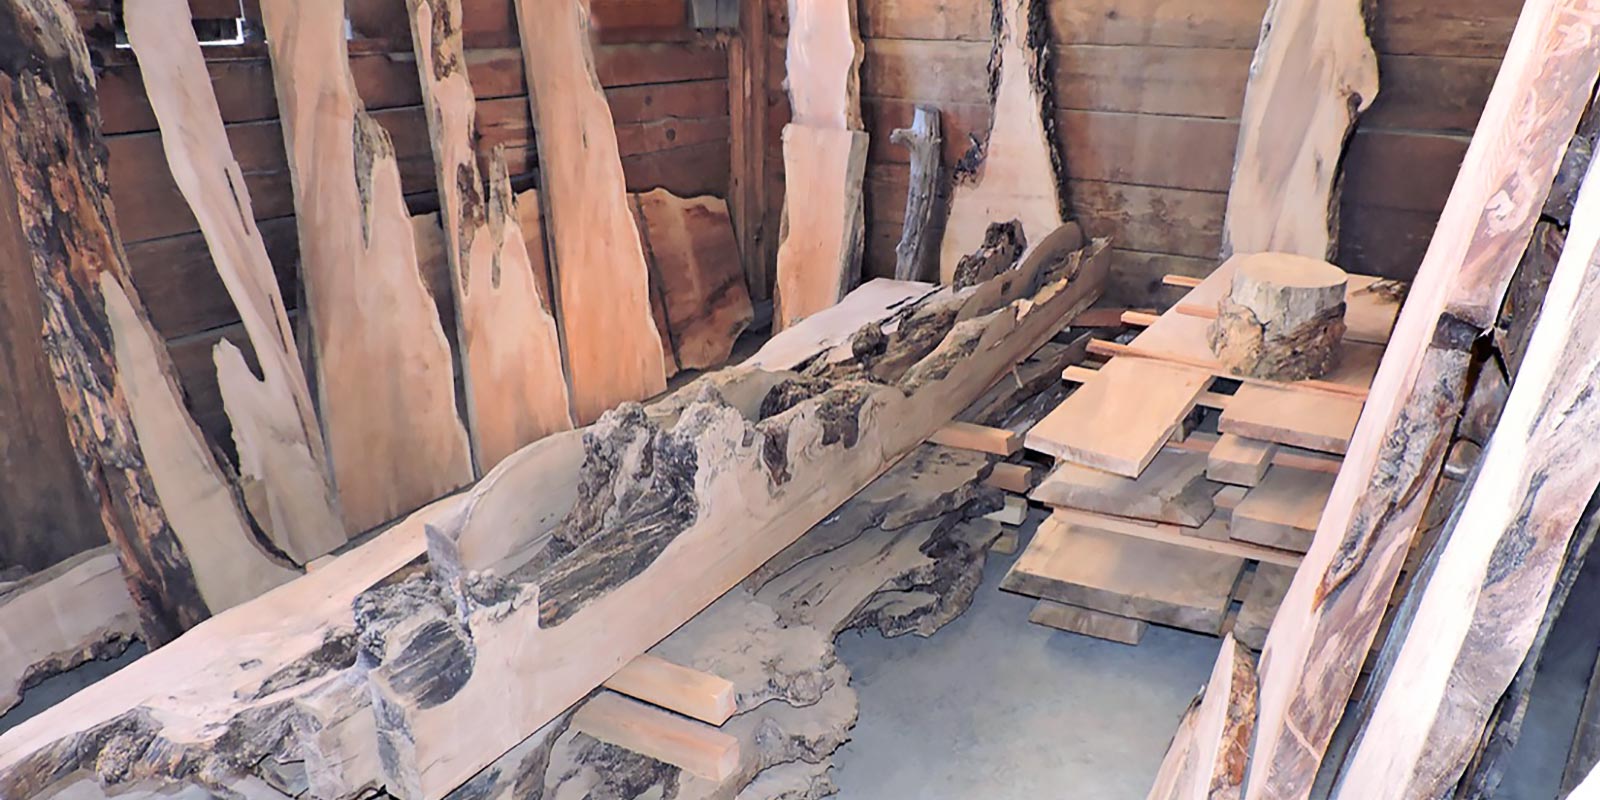 Unique Wood Slabs